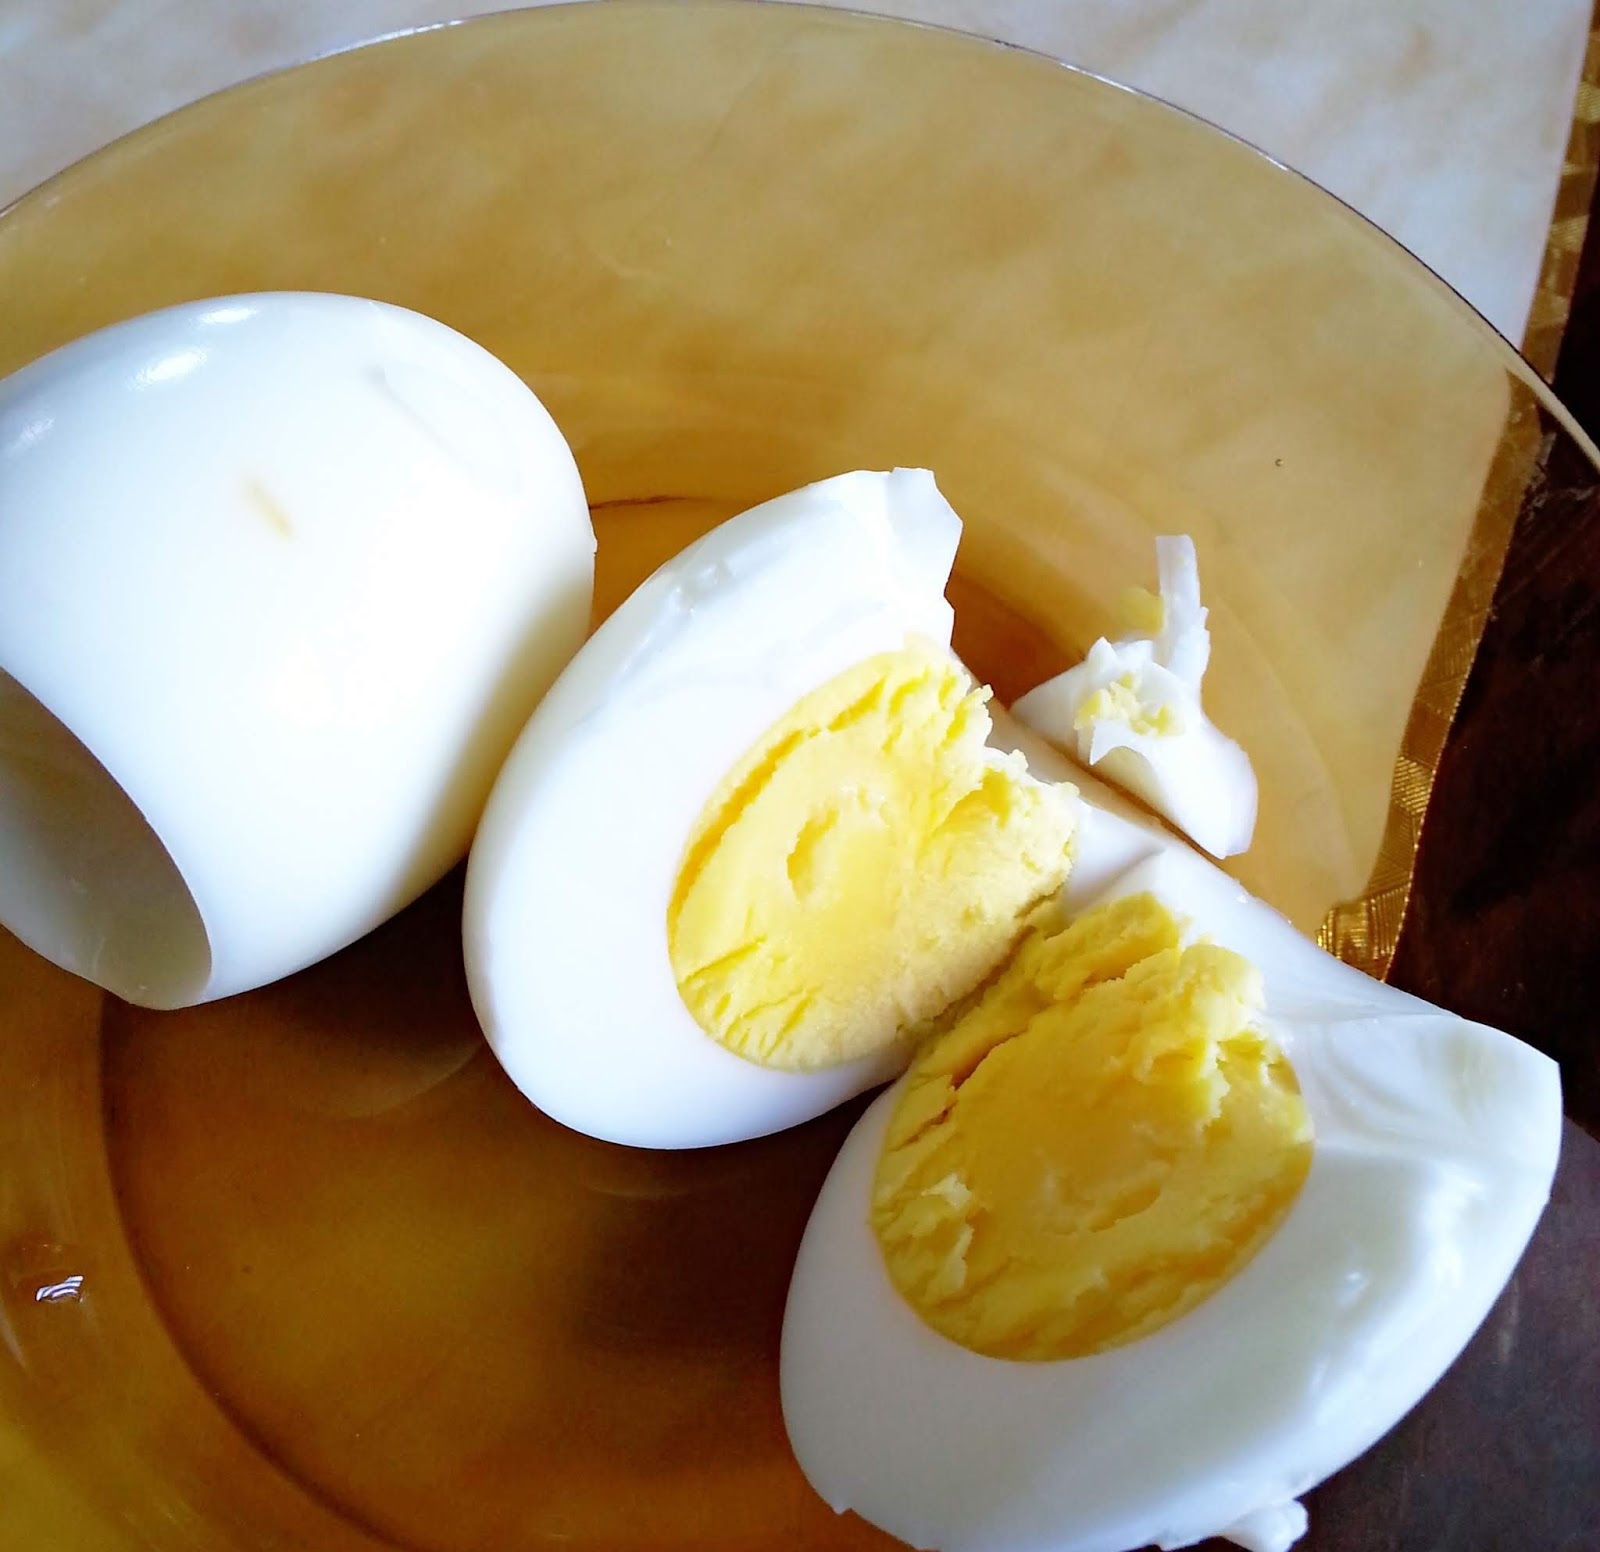 “Lepas Bersalin Tak Boleh Makan Telur Nanti GataI” – Doktor Selar Kenyataan Ini